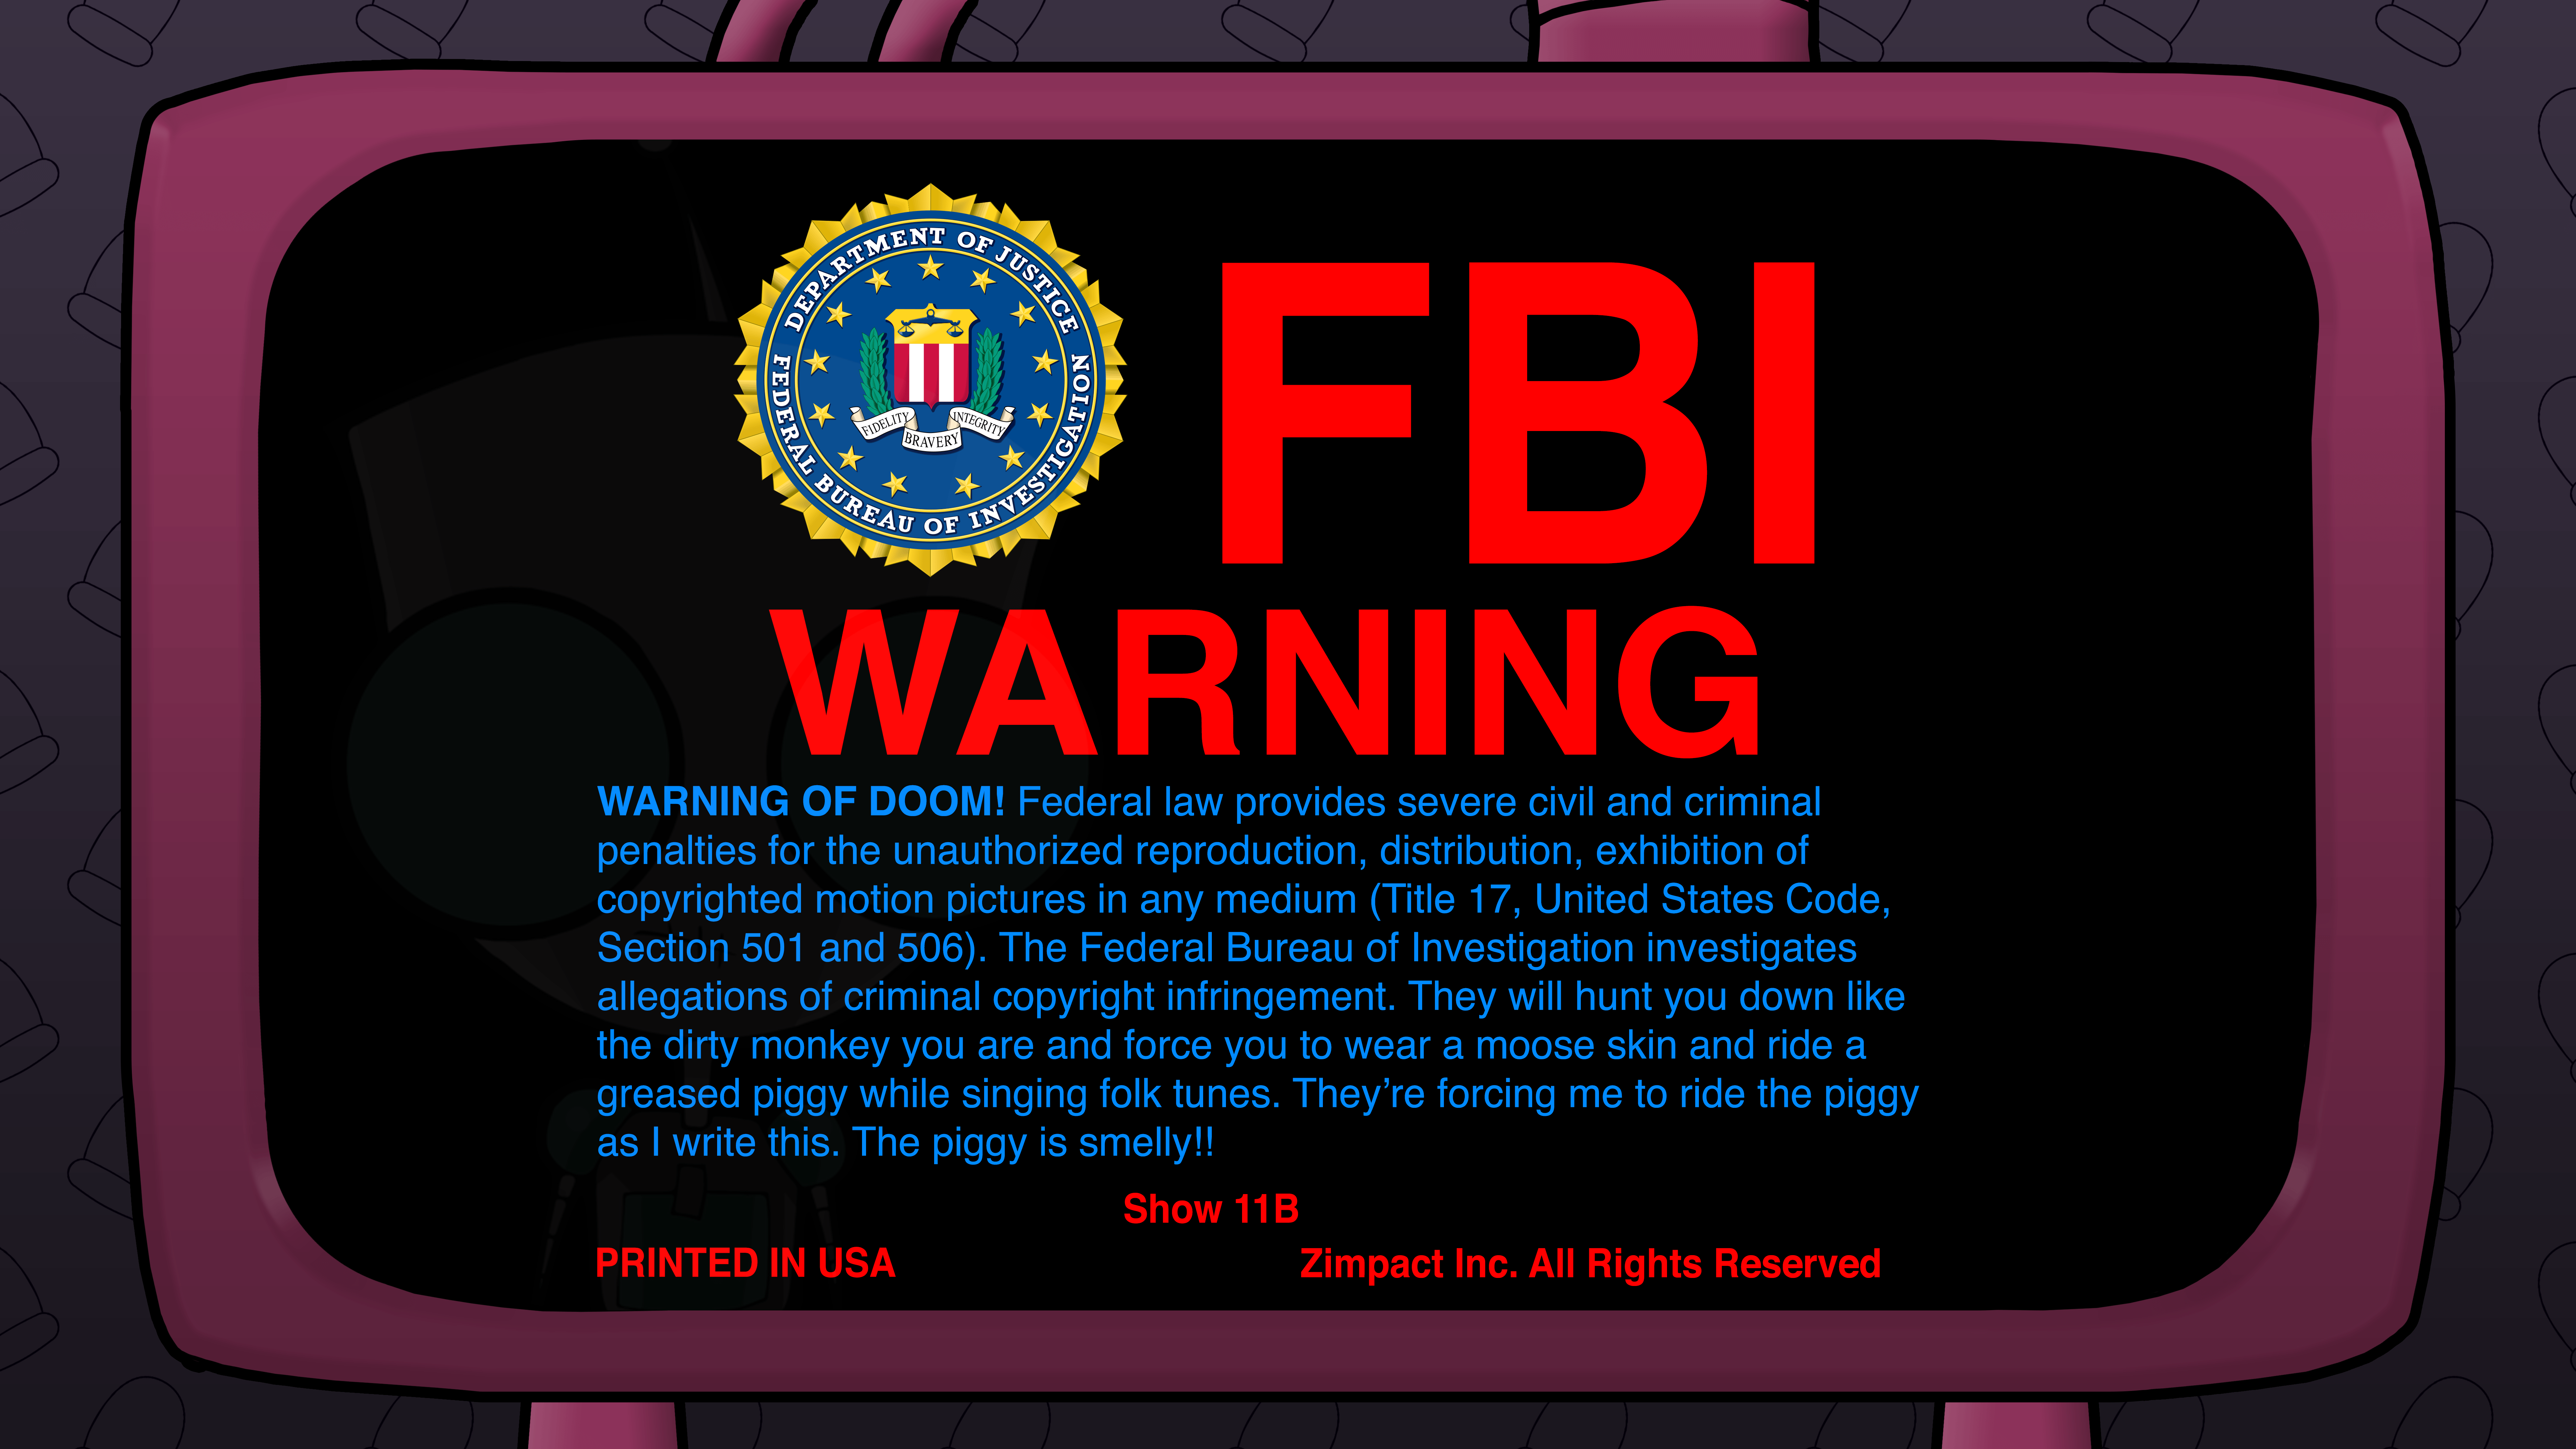 FBI Warning of DOOM!